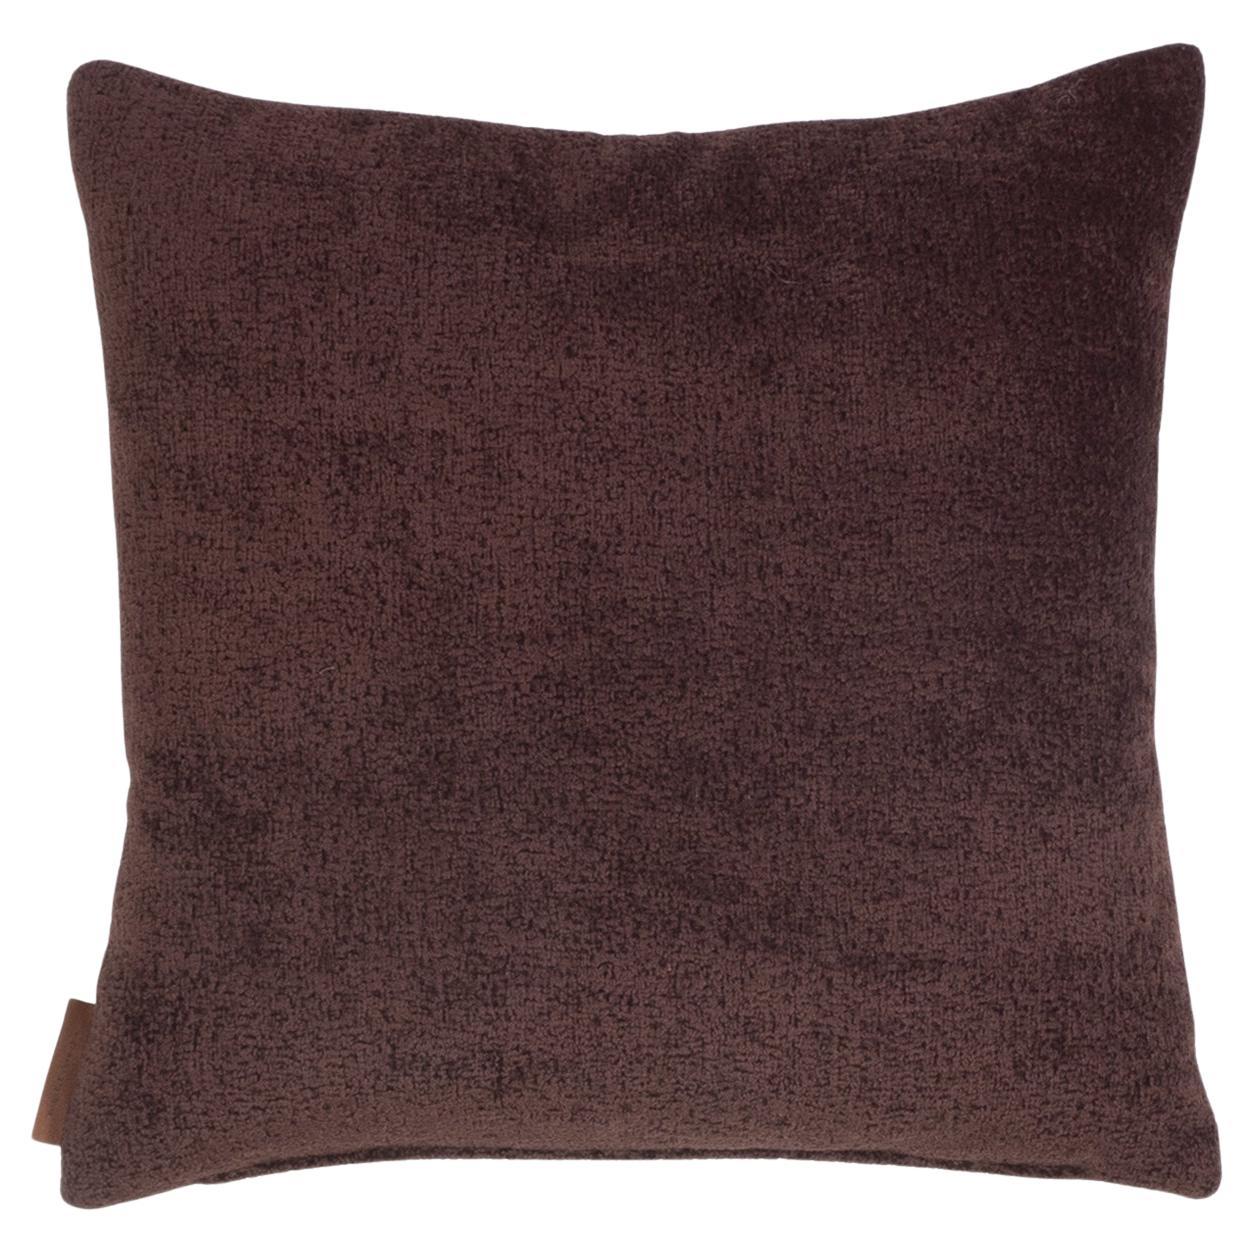 Contemporary Purple Pillow "Bubble Lux" Marsala Dark Peach by Evolution21 For Sale